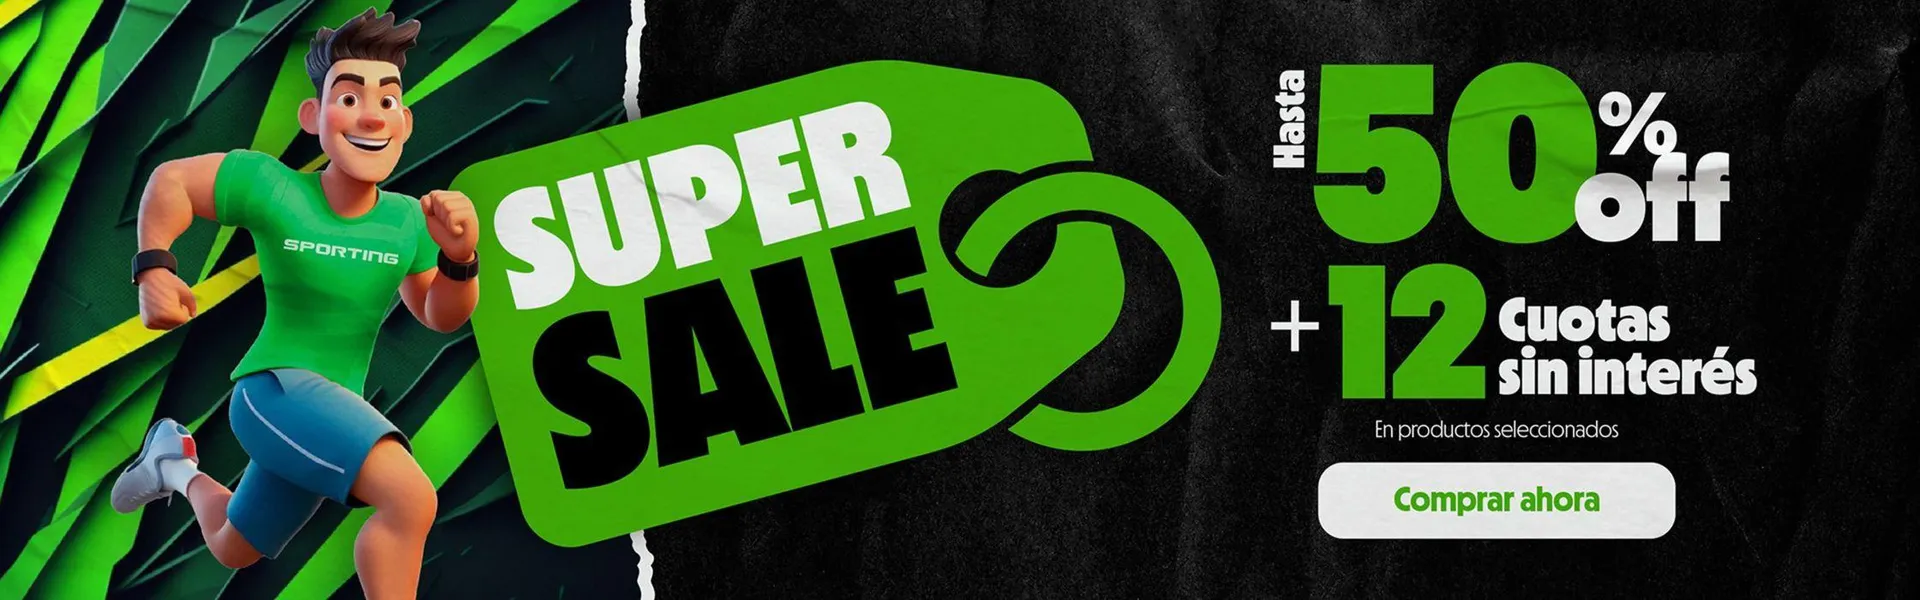 Super Sale Hasta 50% OFF + 12 cuotas sin interés - 1